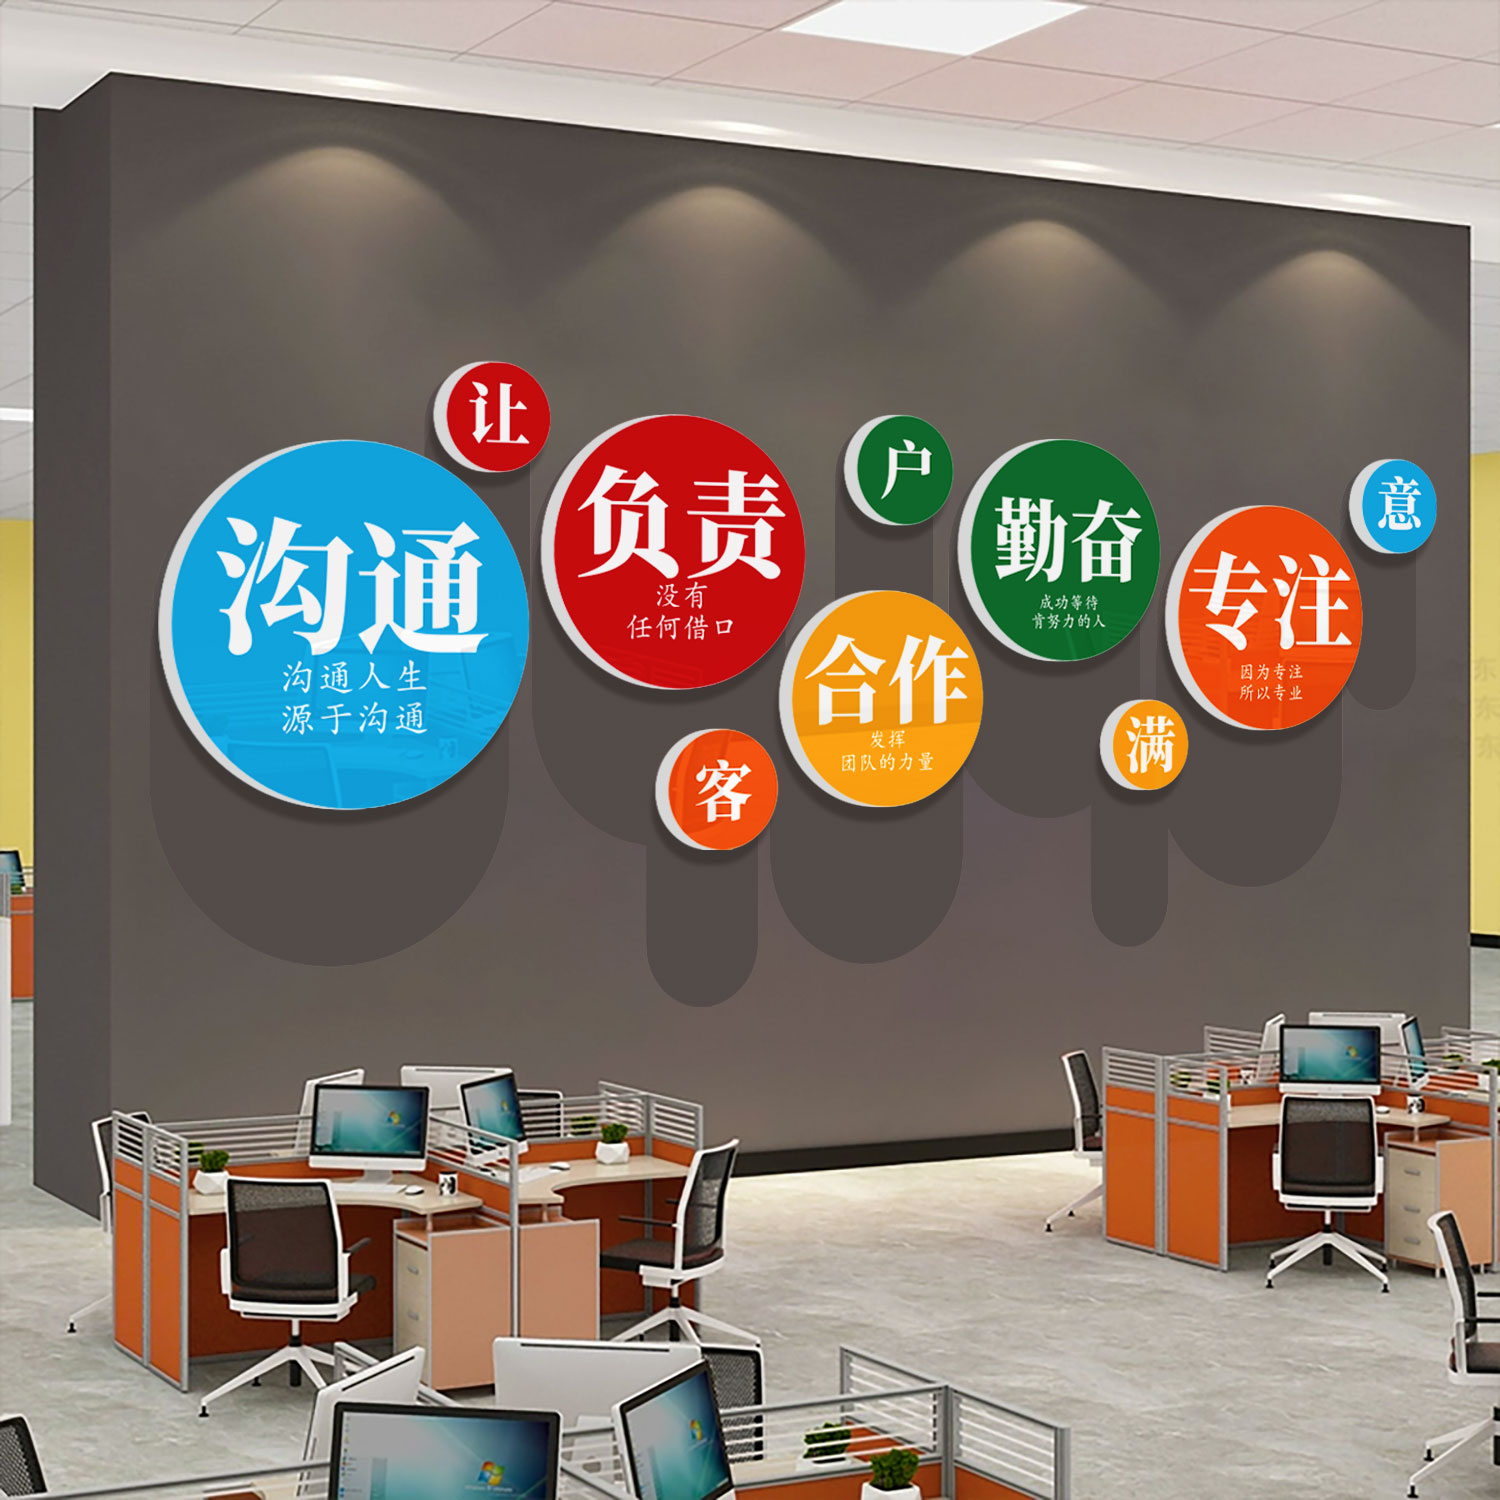 办公室墙面装饰企业文化电商公司背景氛围布置会议励志标语贴纸画